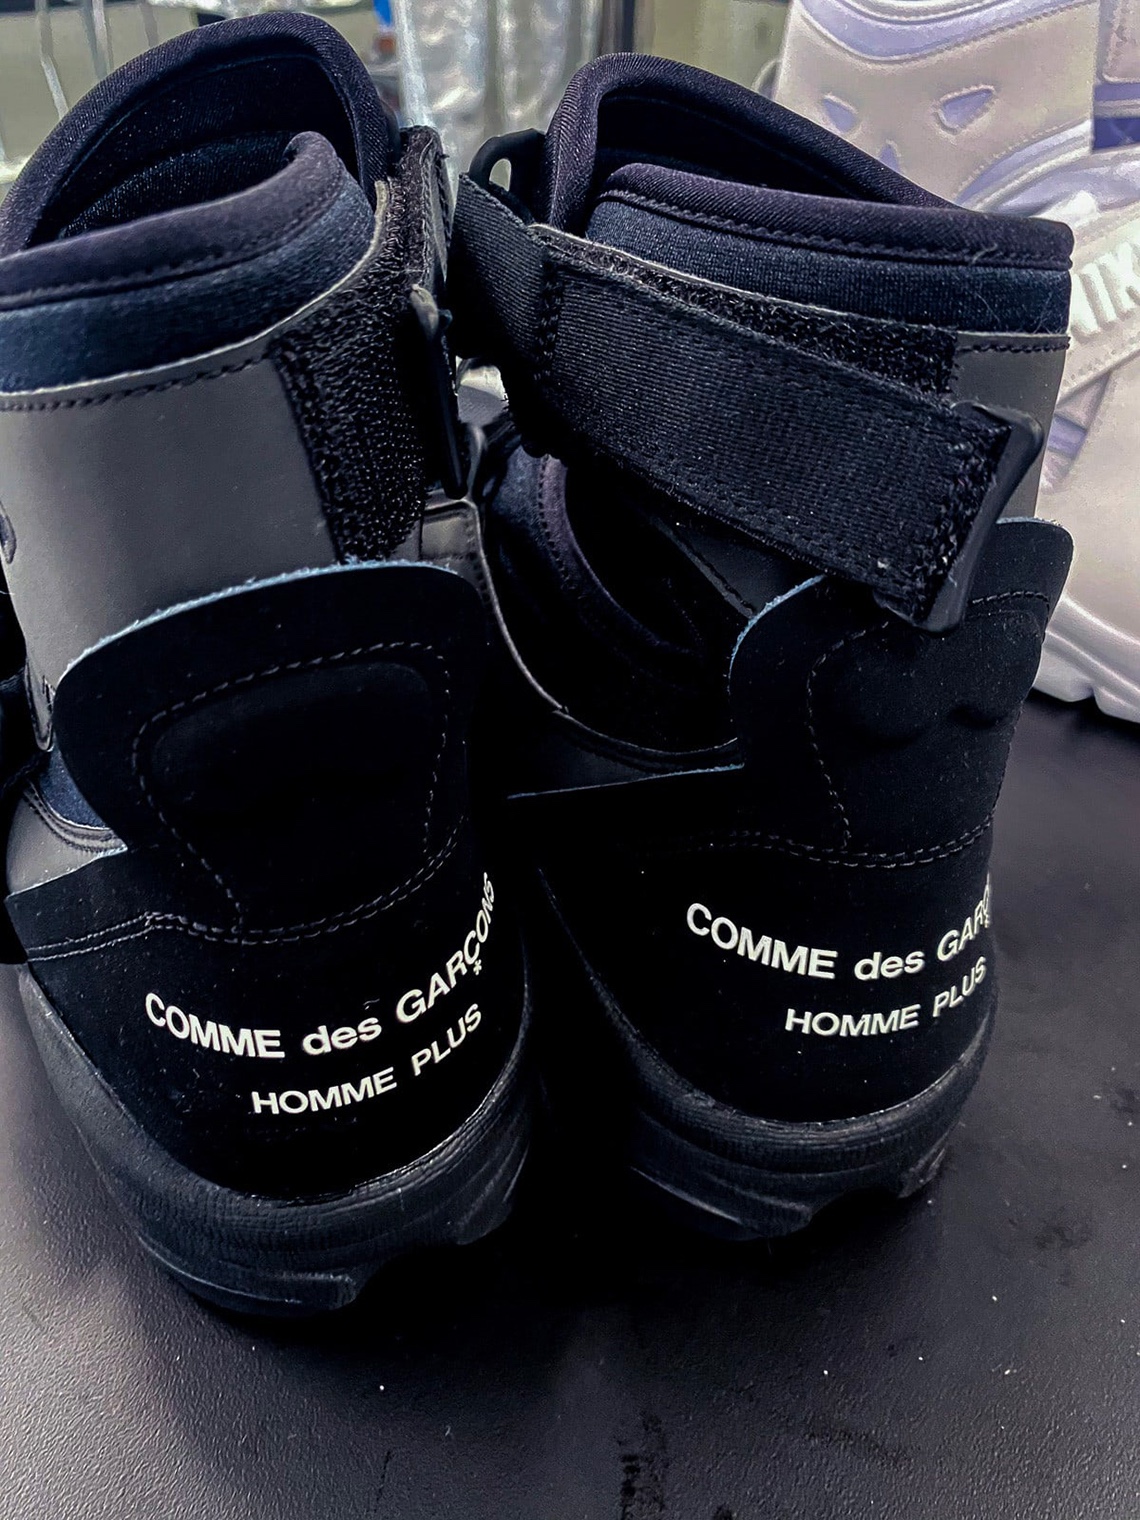 COMME des GARCONS HOMME PLUS x Nike Air Carnivore black